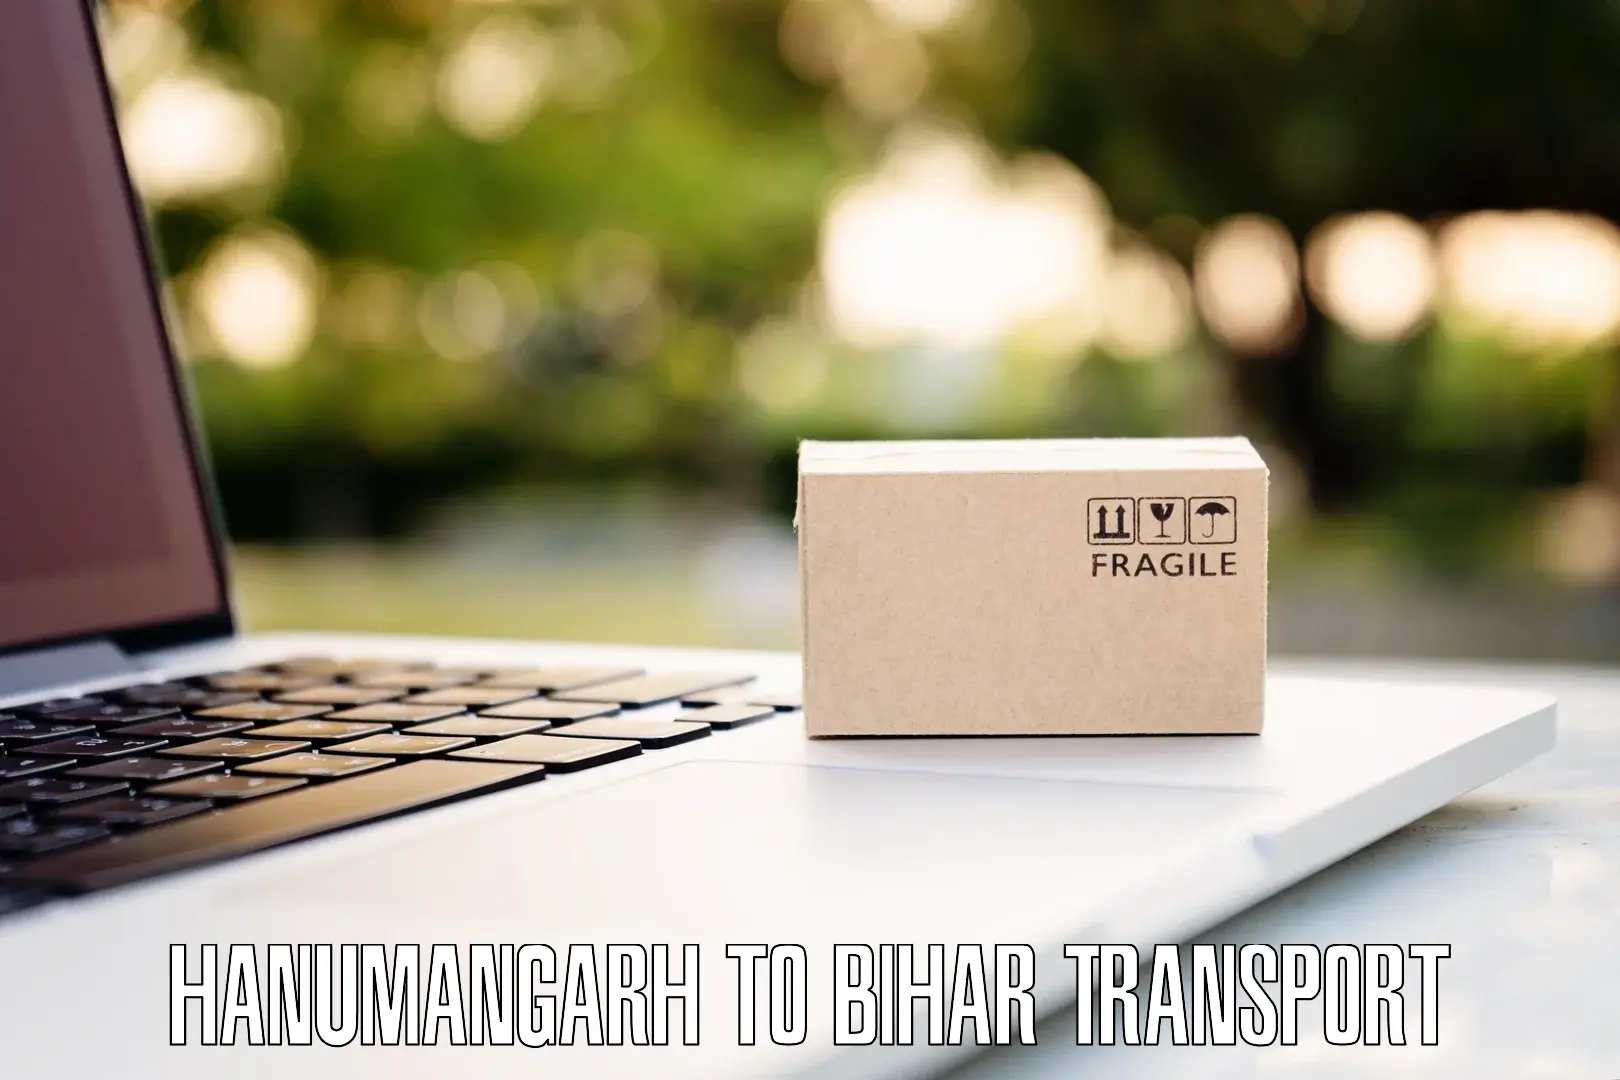 Delivery service Hanumangarh to Manihari